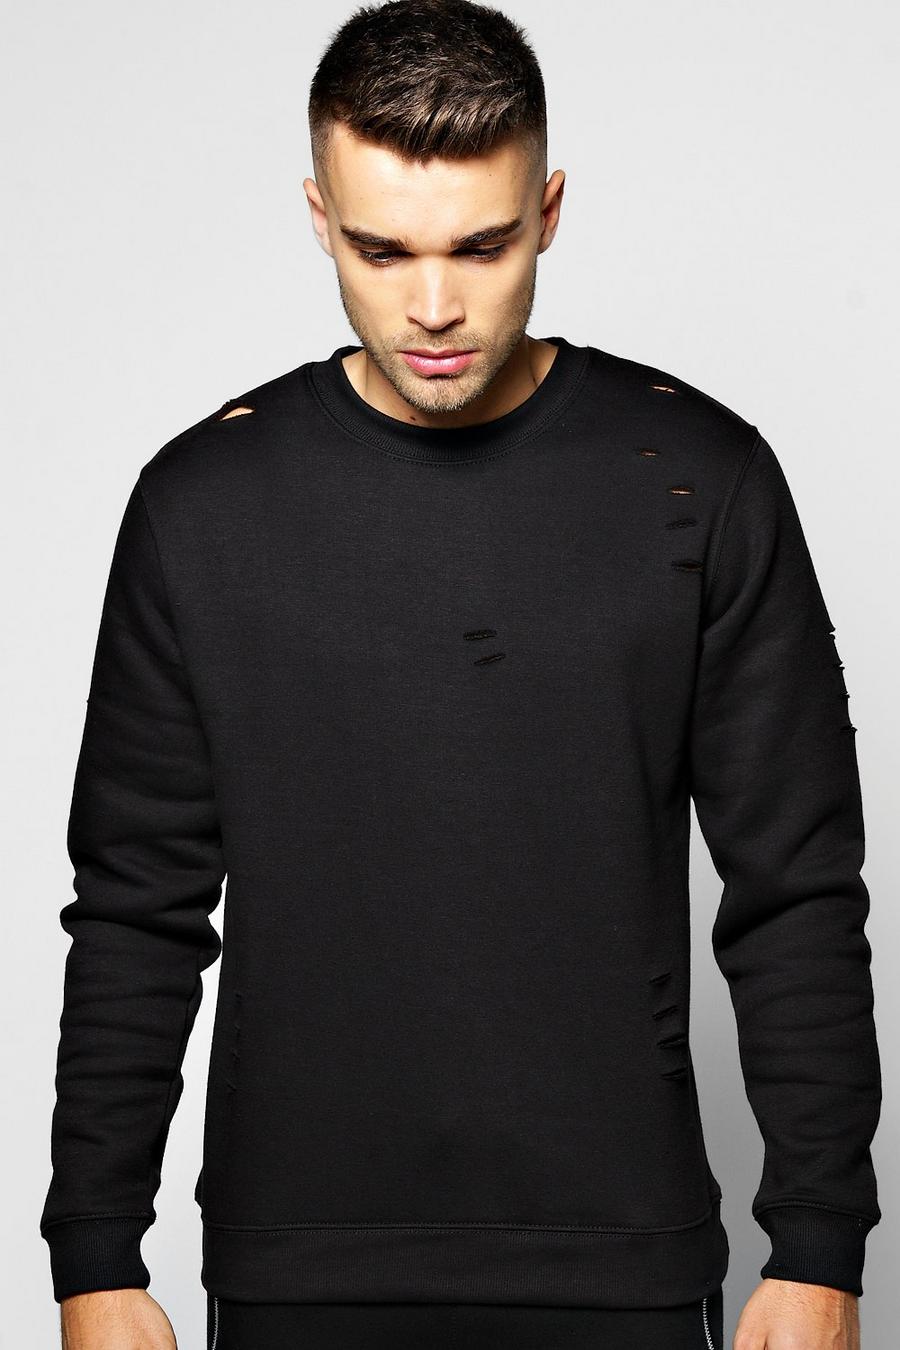 Black Crew Neck Sweatshirt With Slashes image number 1